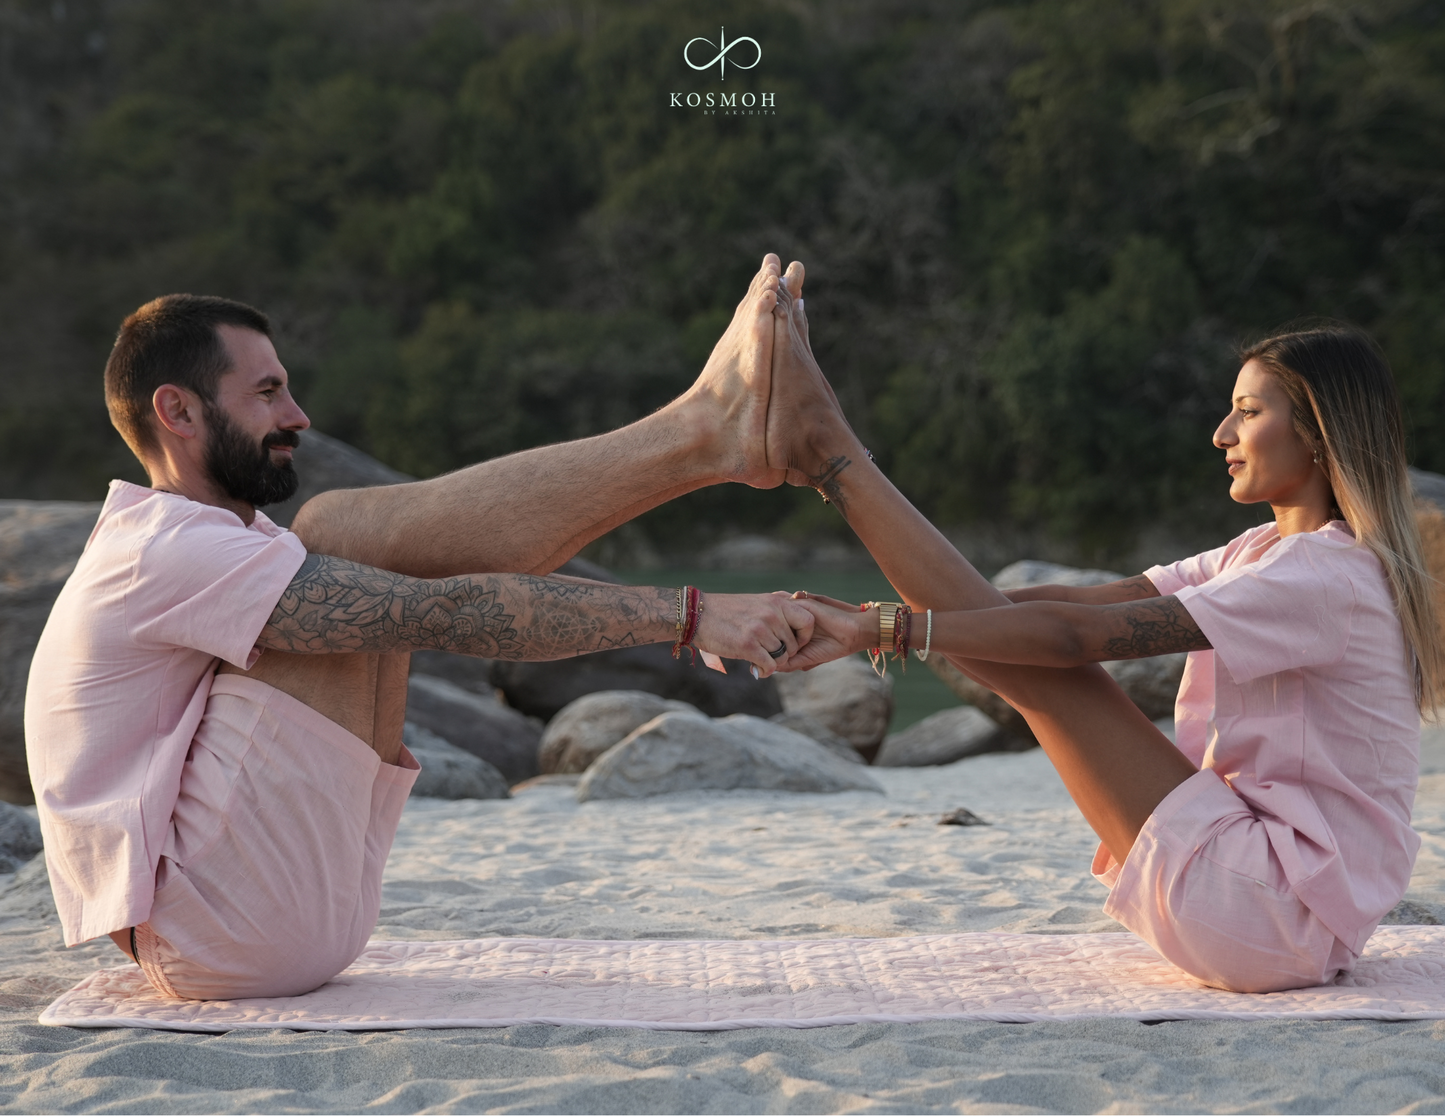 Kosmoh 100% Organic KHADI Yoga Shorts & Top Set - Serene White